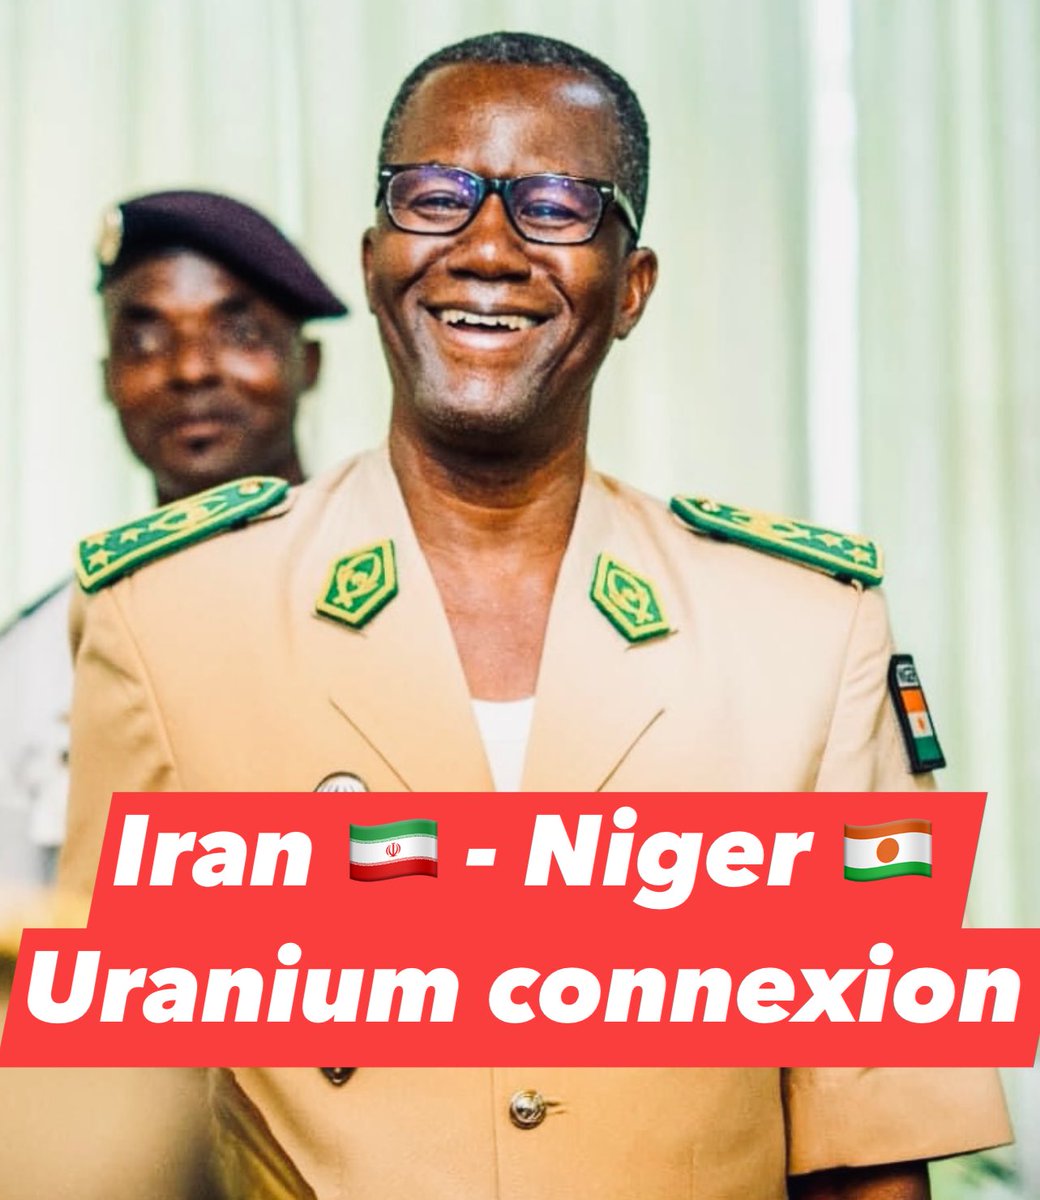 🚨#Niger : les autorités Iraniennes négocient avec la junte au Niger, l'acquisition de 300 tonnes d'uranium. Selon le cours actuel, sa valeur avoisine les 56 millions de dollars. Le dossier ultrasensible est scruté au plus près par l'administration de Joe Biden. Le Premier